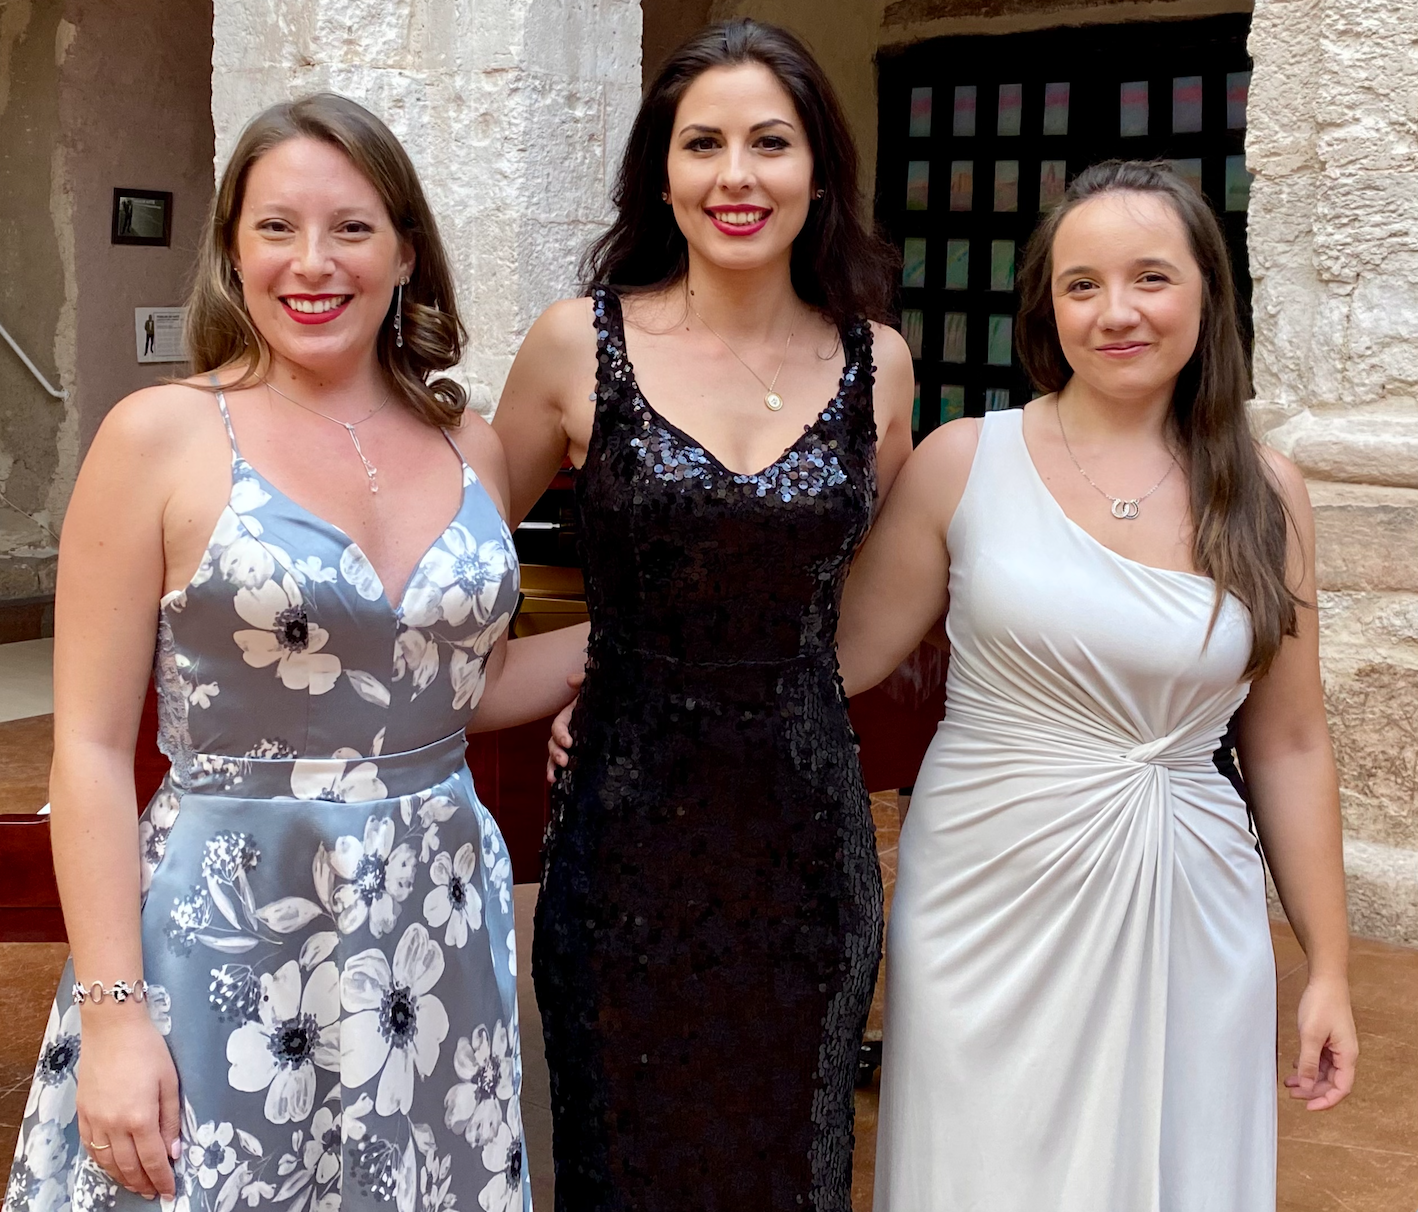 De izquierda a derecha: Javiera Saavedra (Primer Premio), Suzana Nadejde (Segundo Premio), Carla Sampedro (Tercer Premio) / Foto: ©Fdoble